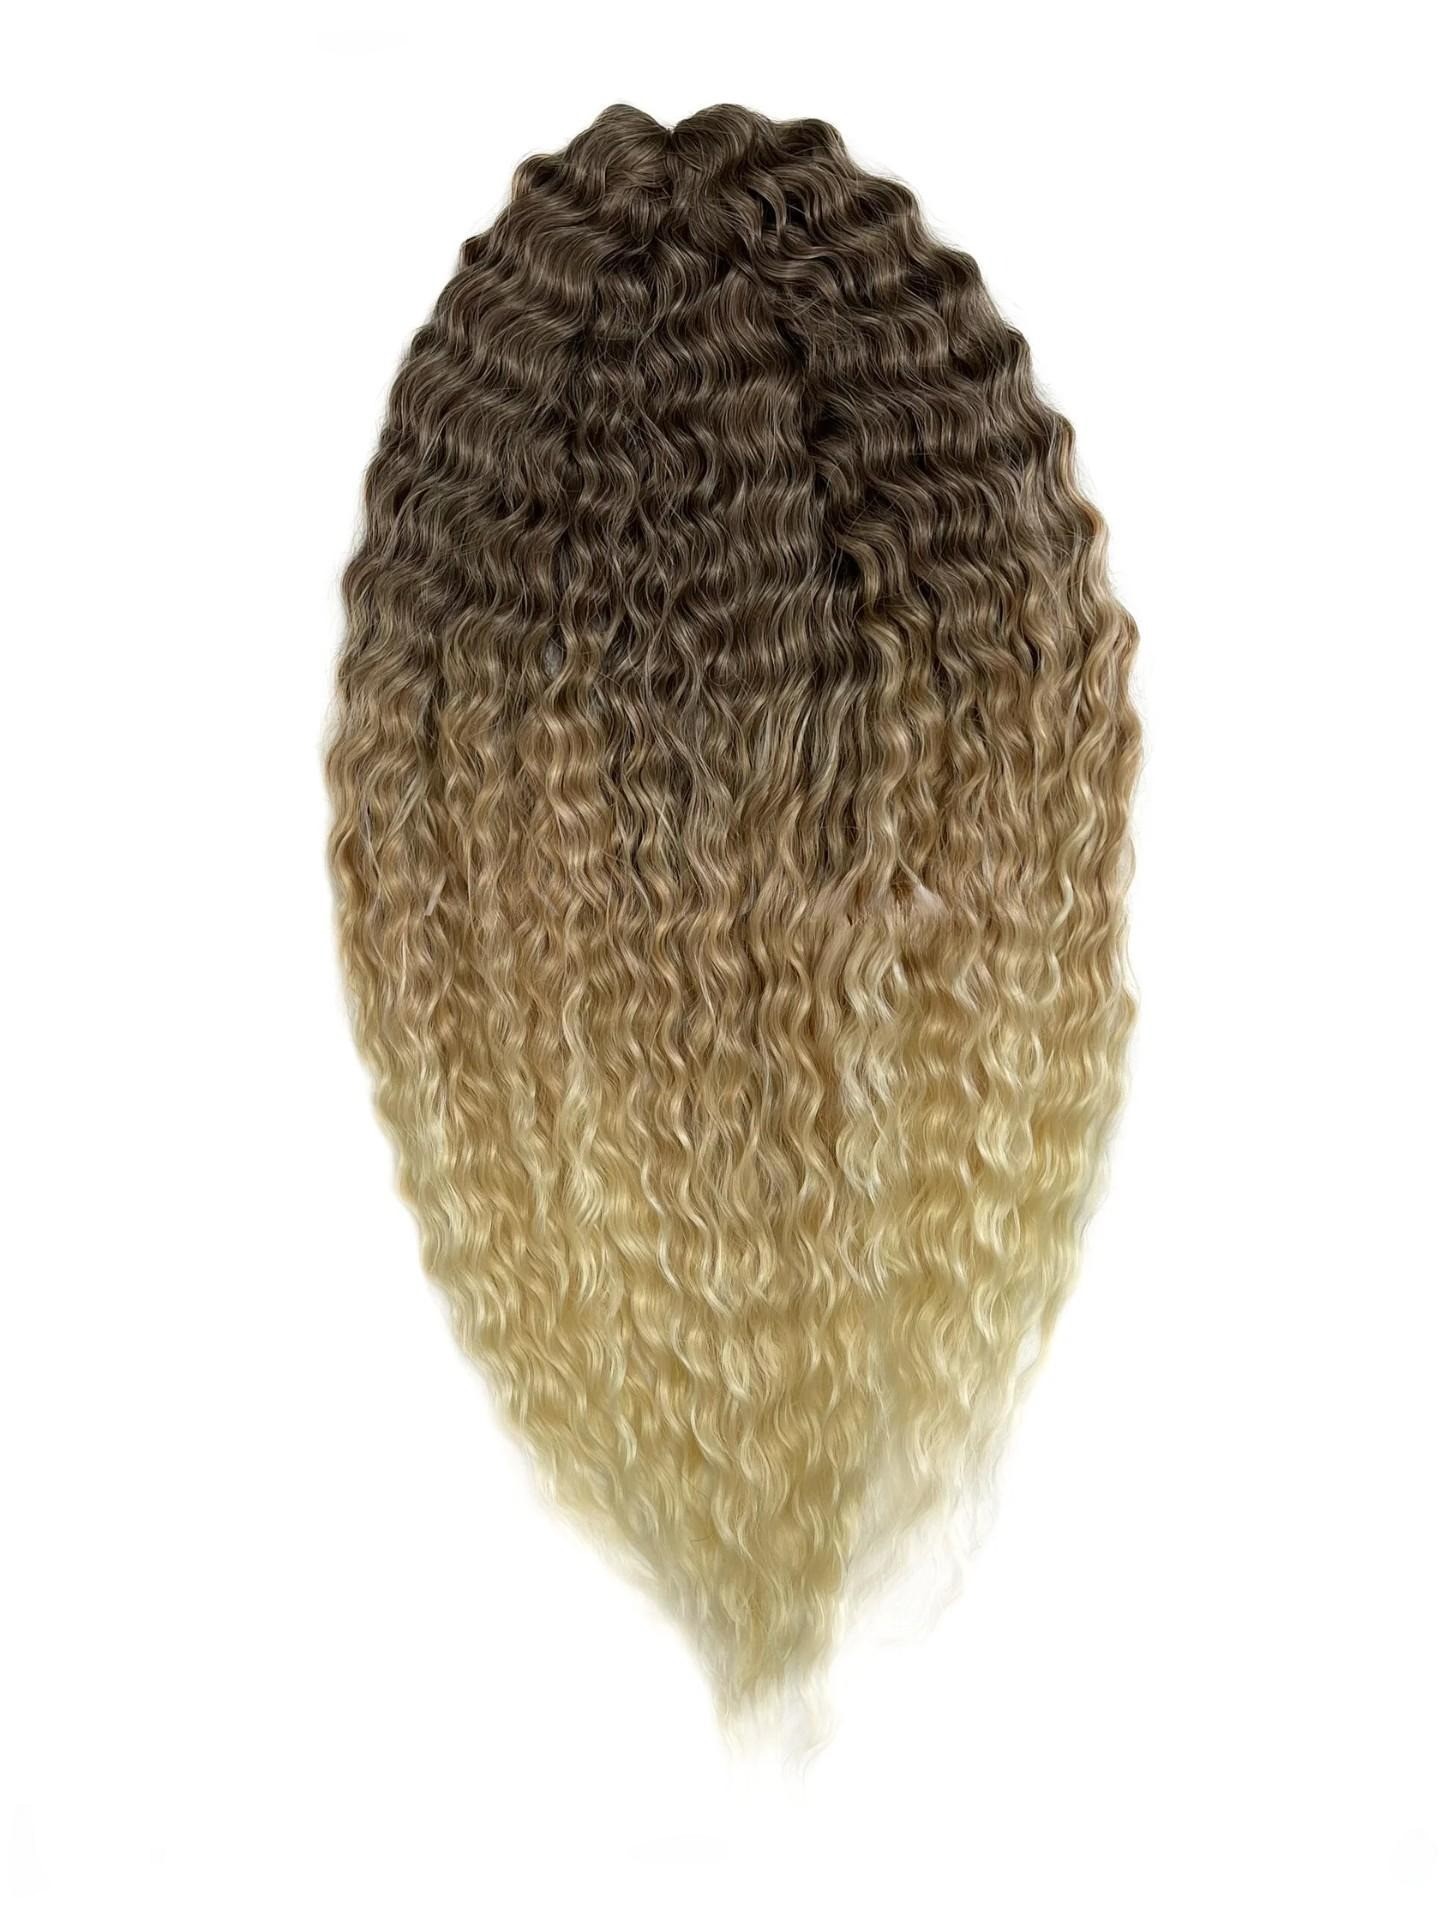 Афрокудри для плетения волос Ariel цвет 102 светло каштановый длина 55см вес 300г салфетка микрофибра особого плетения для стекол и зеркал avs mf 6106 35 х 40 см